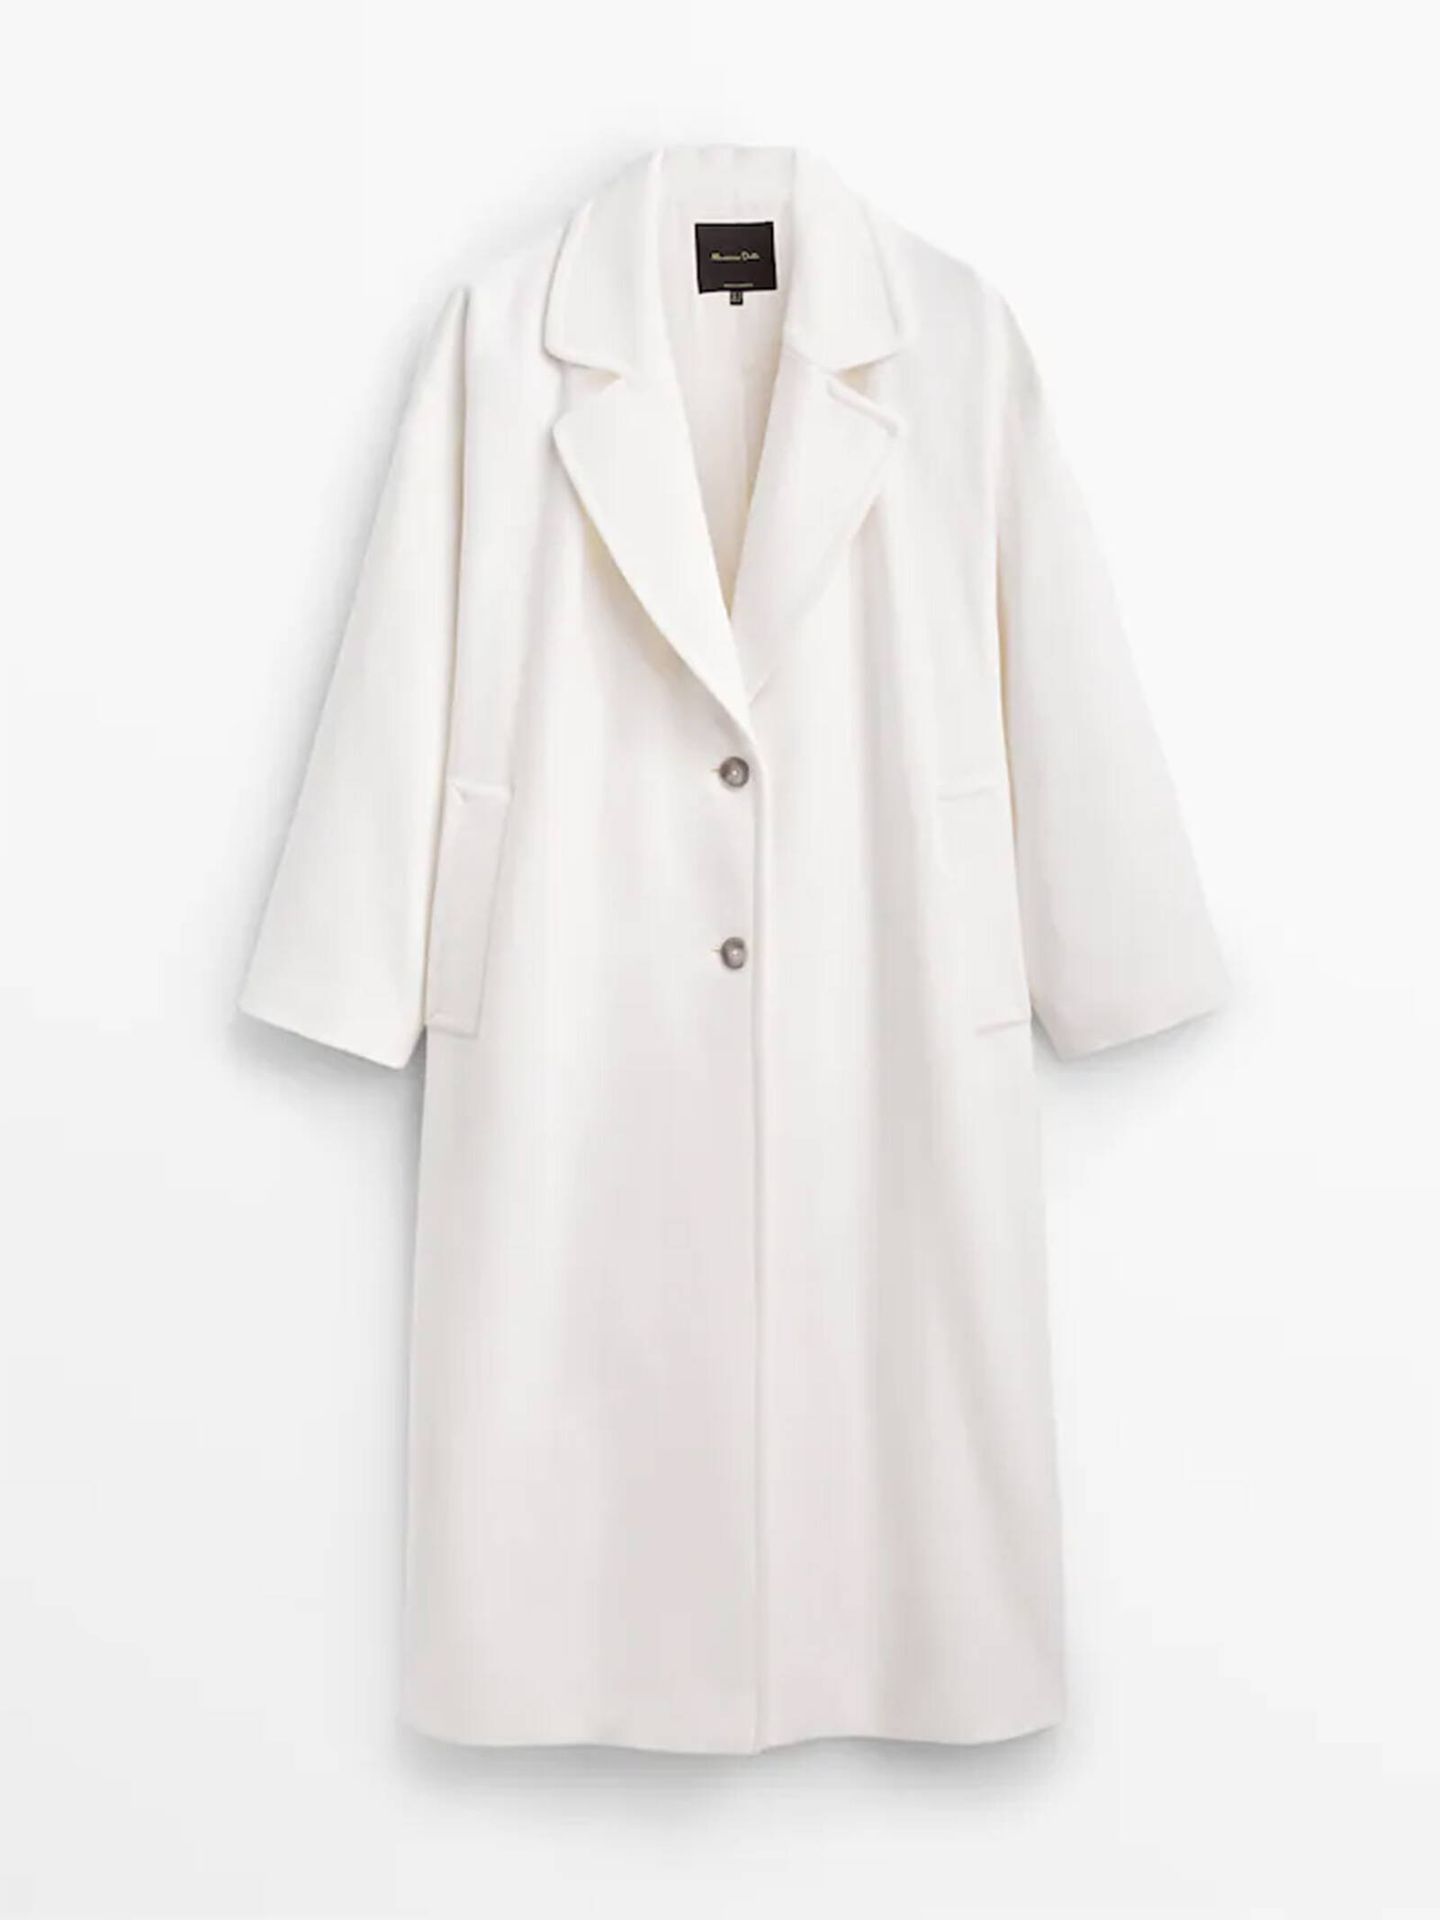 El abrigo blanco de Massimo Dutti para looks elegantes y con estilo. (Cortesía)